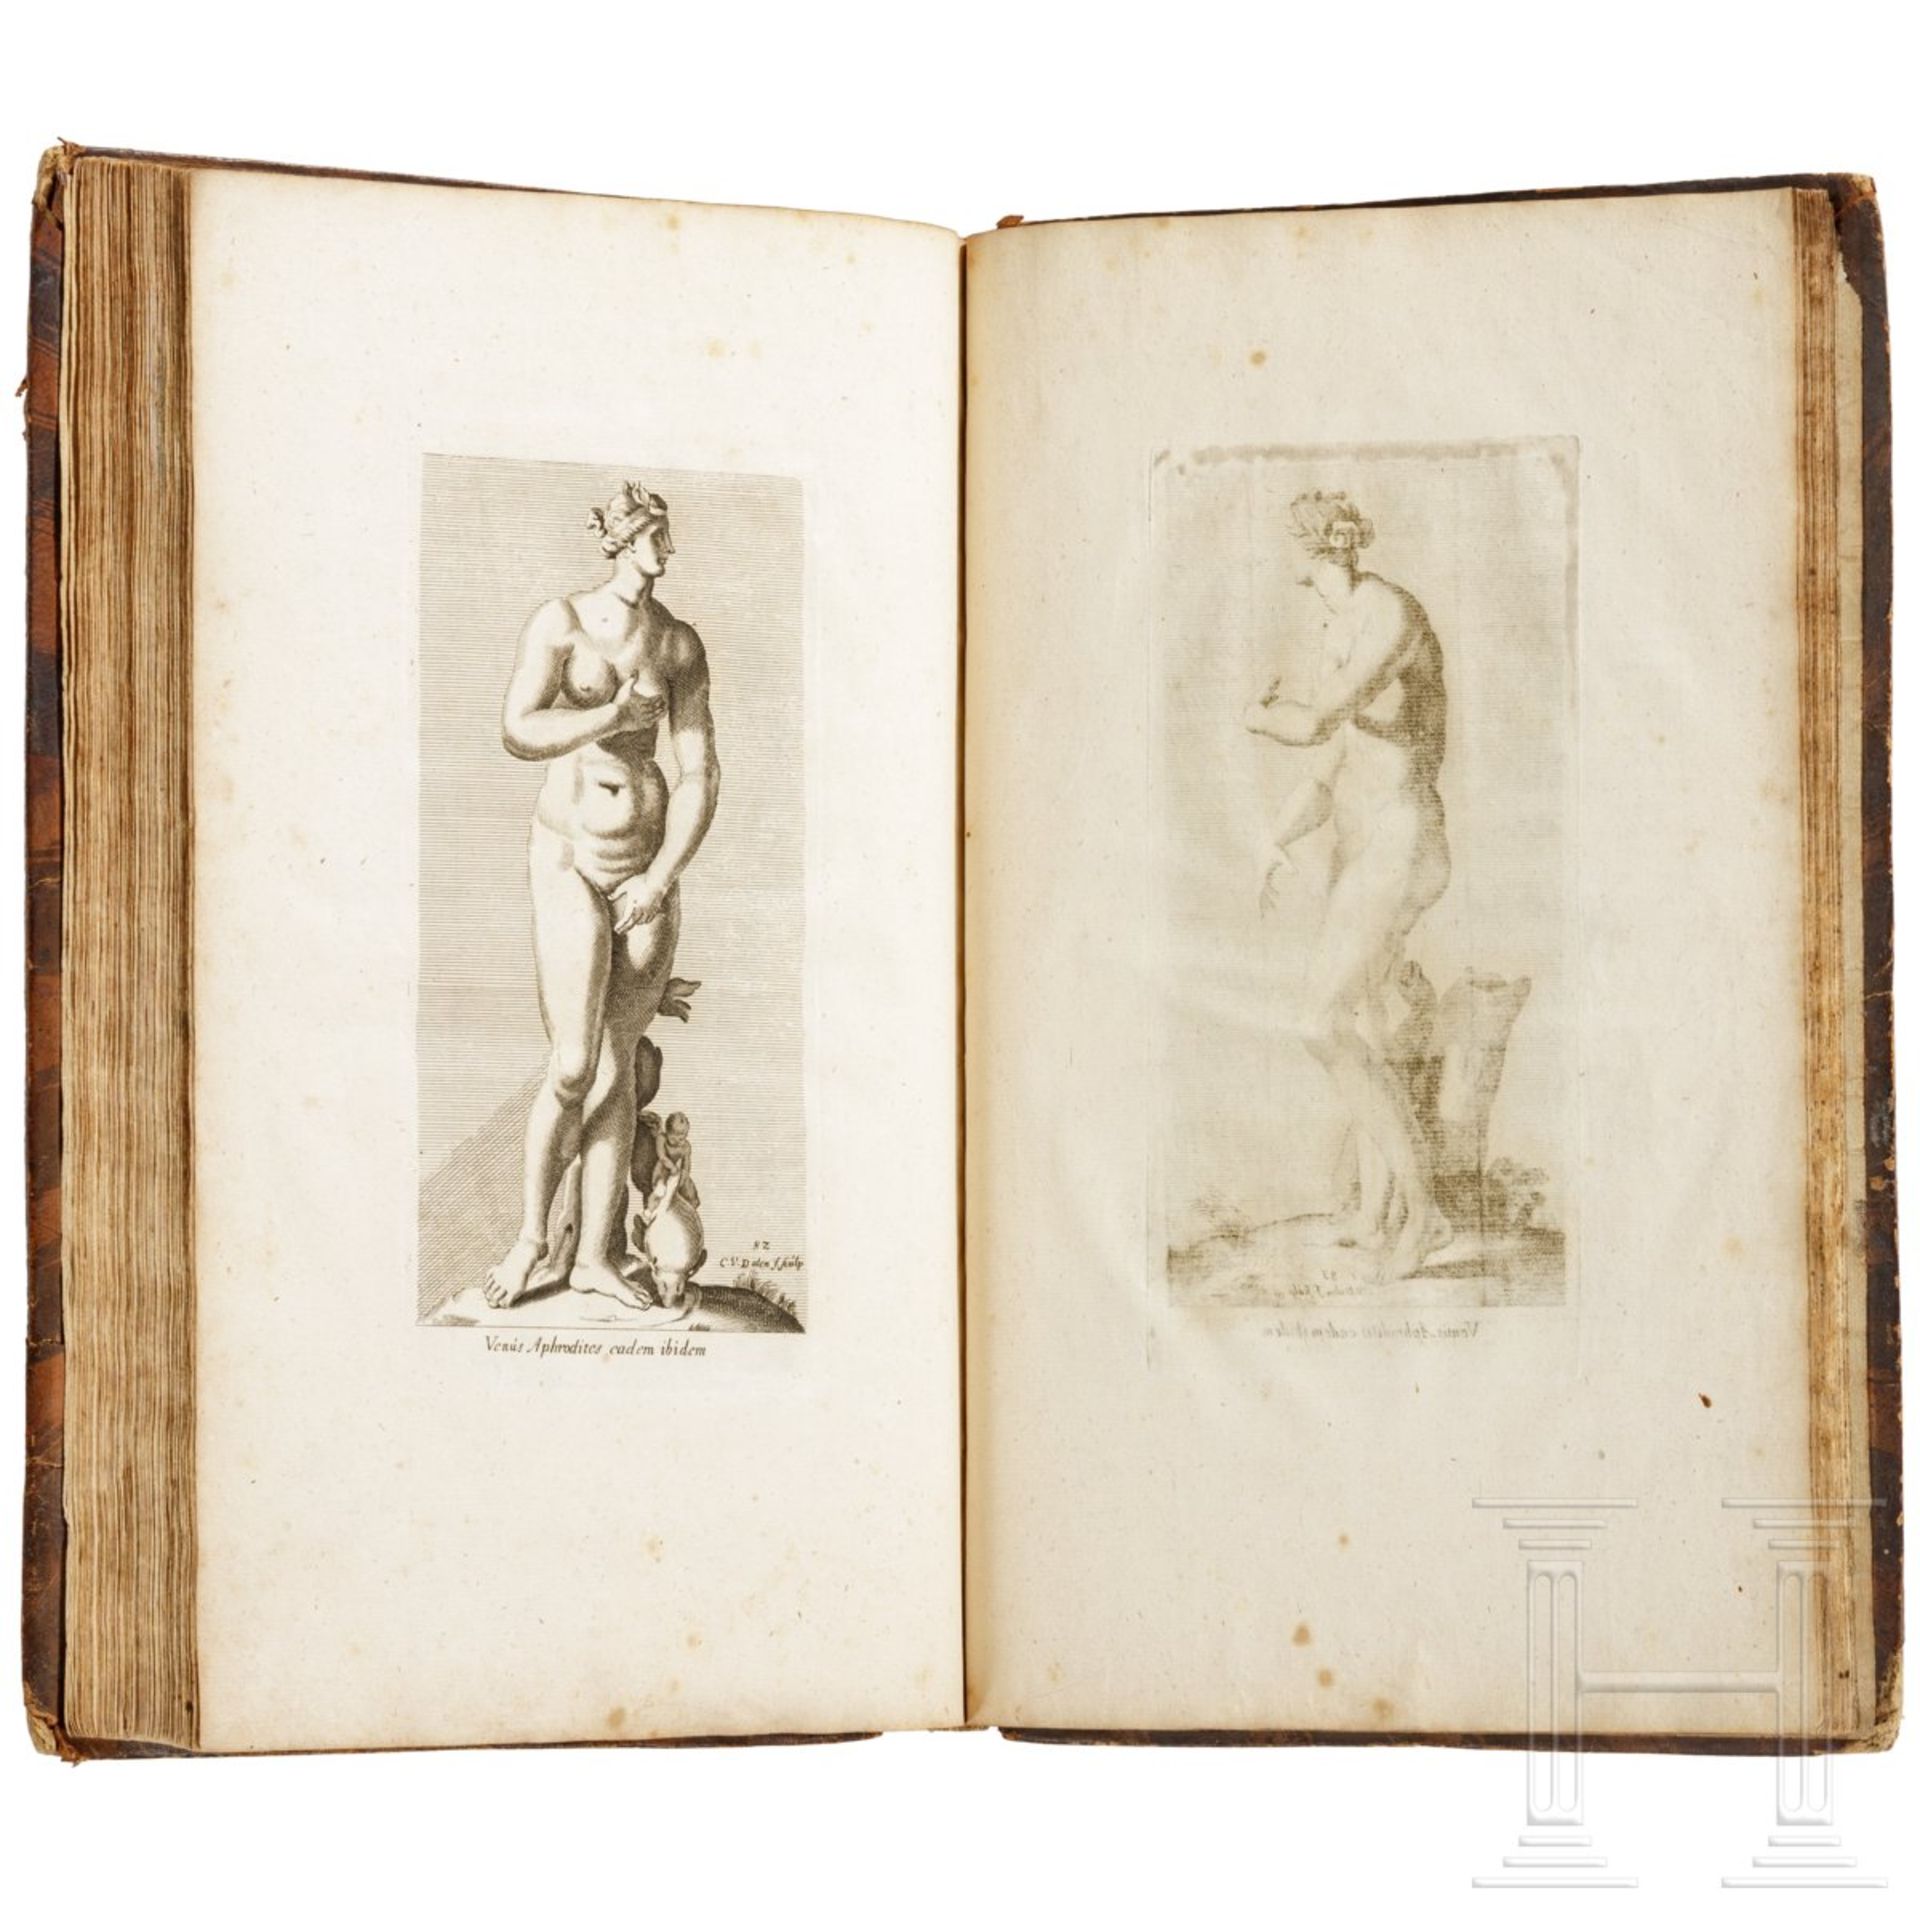 "Kunstkabinet", Tafelwerk über die Standbilder des antiken Roms, Gravenhage, 1737 - Bild 8 aus 11